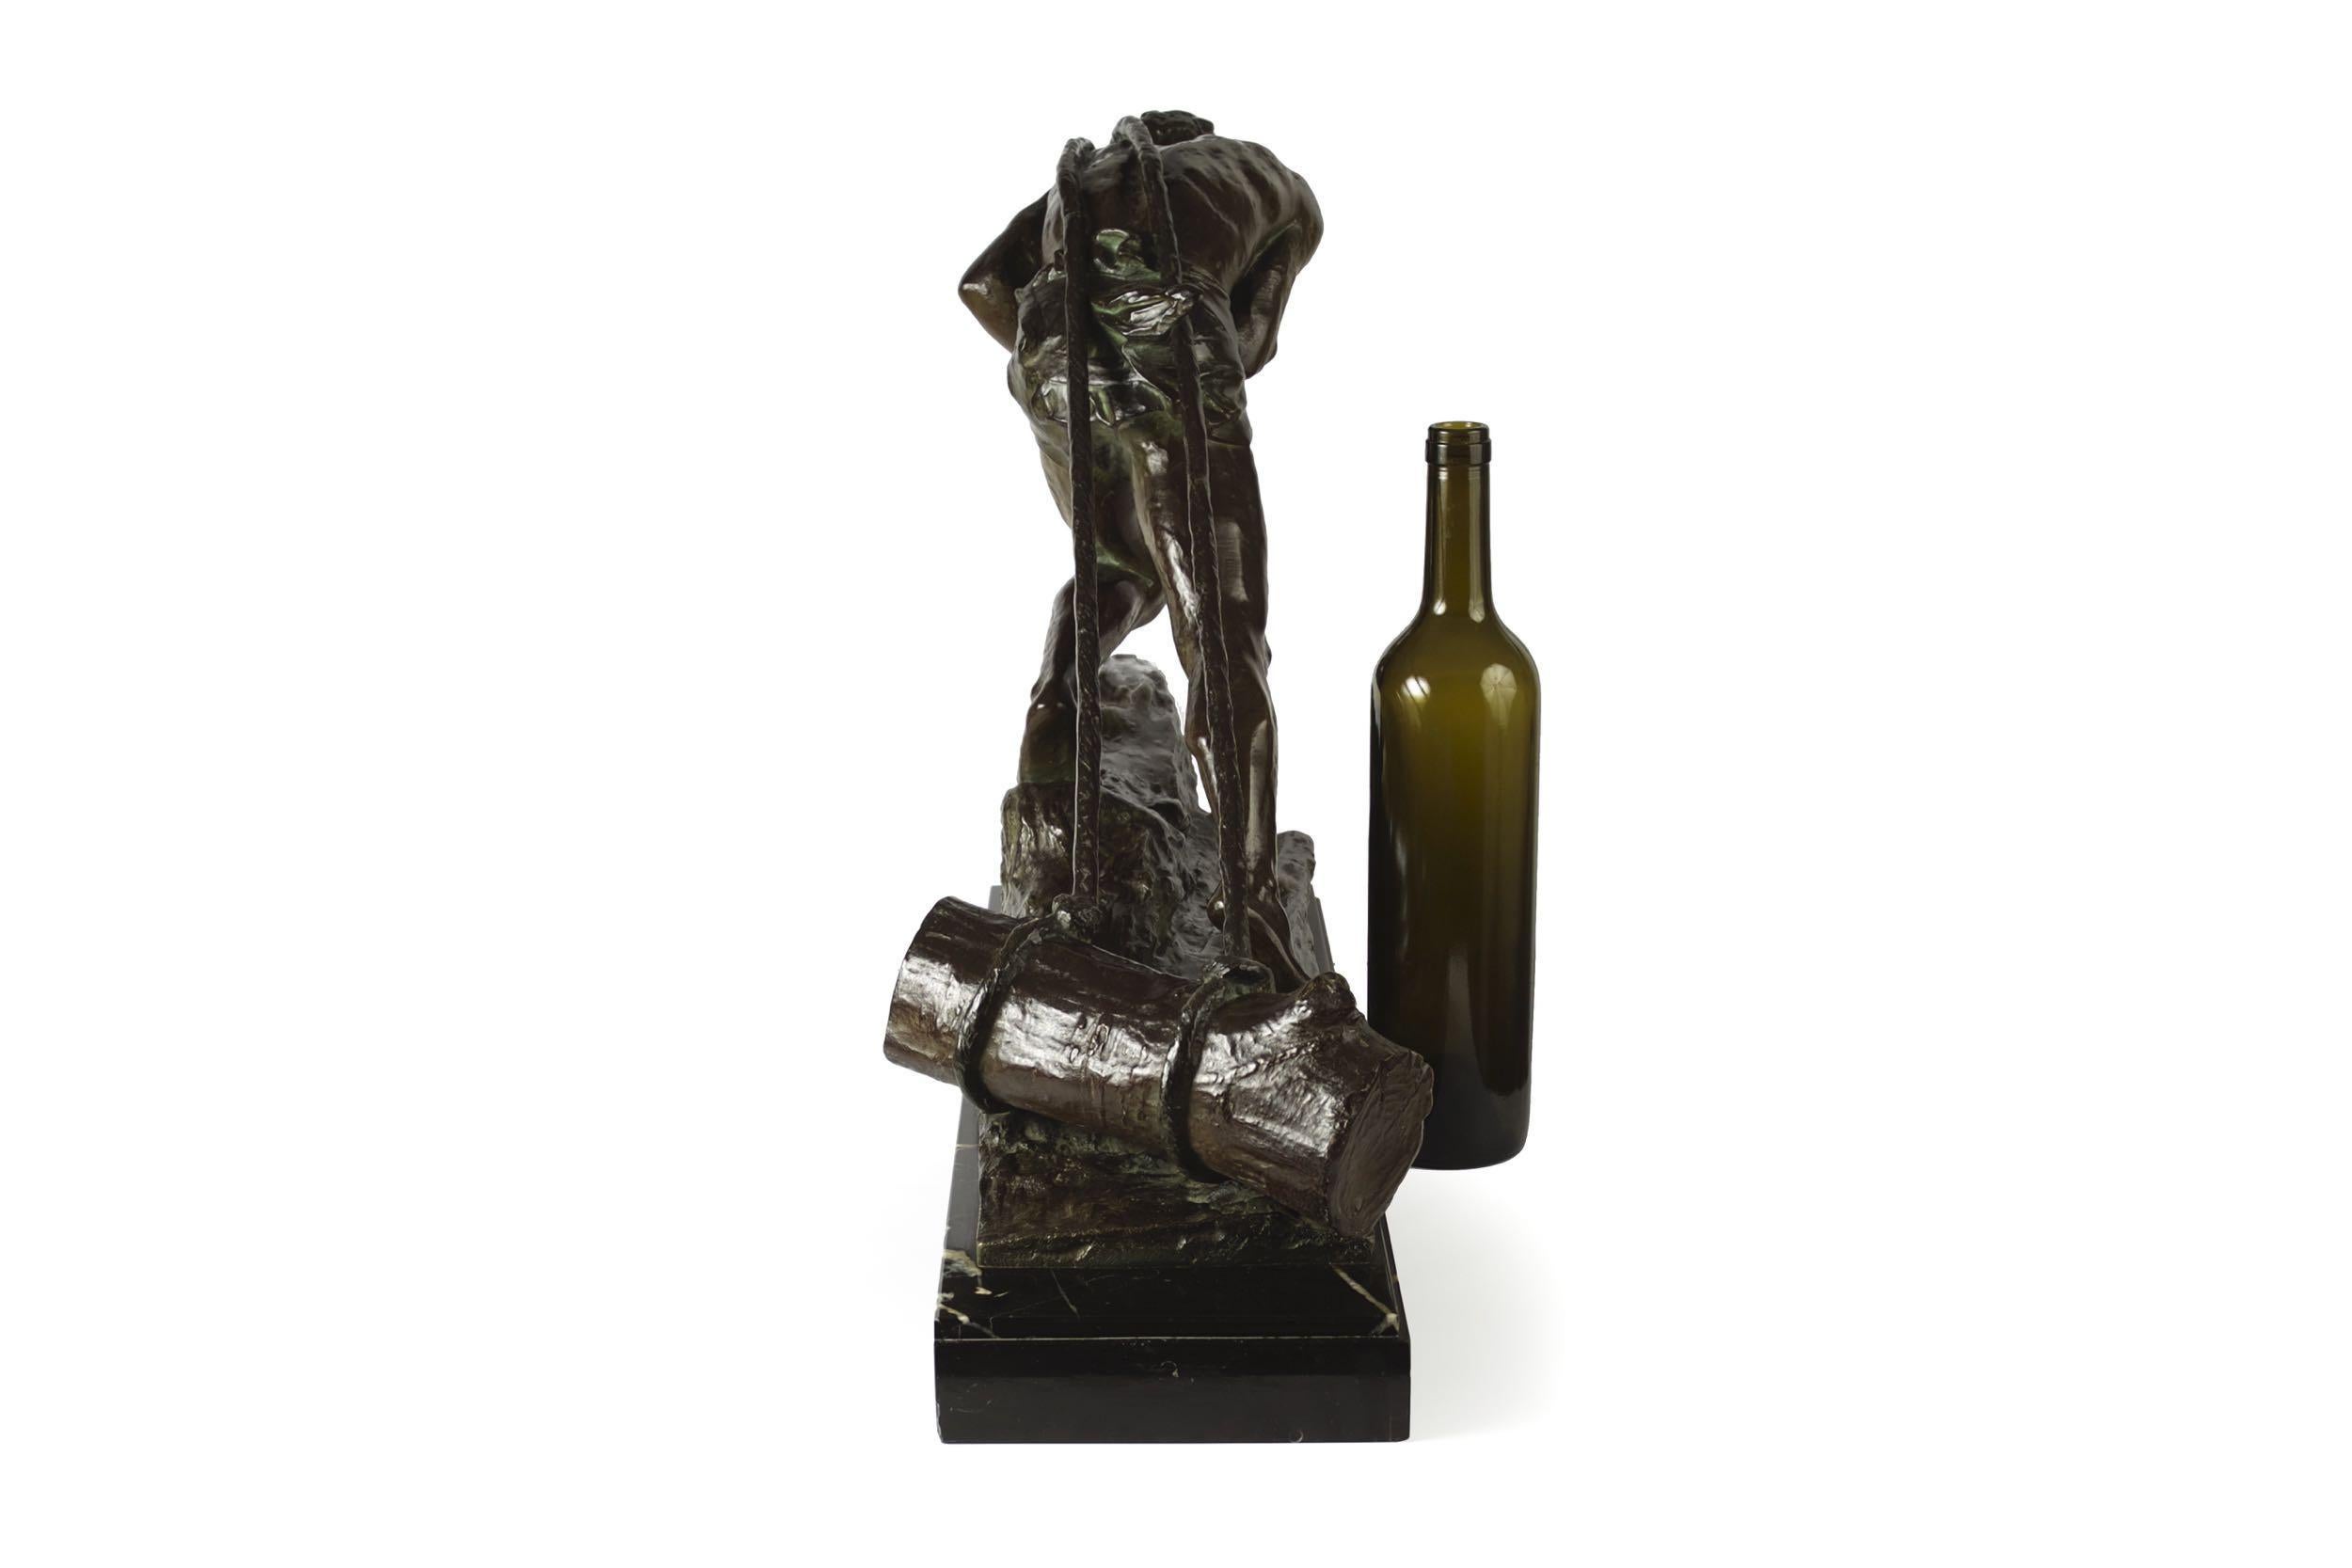 French Antique Art Deco Bronze Sculpture “L’Effort” by Edouard Drouot 1